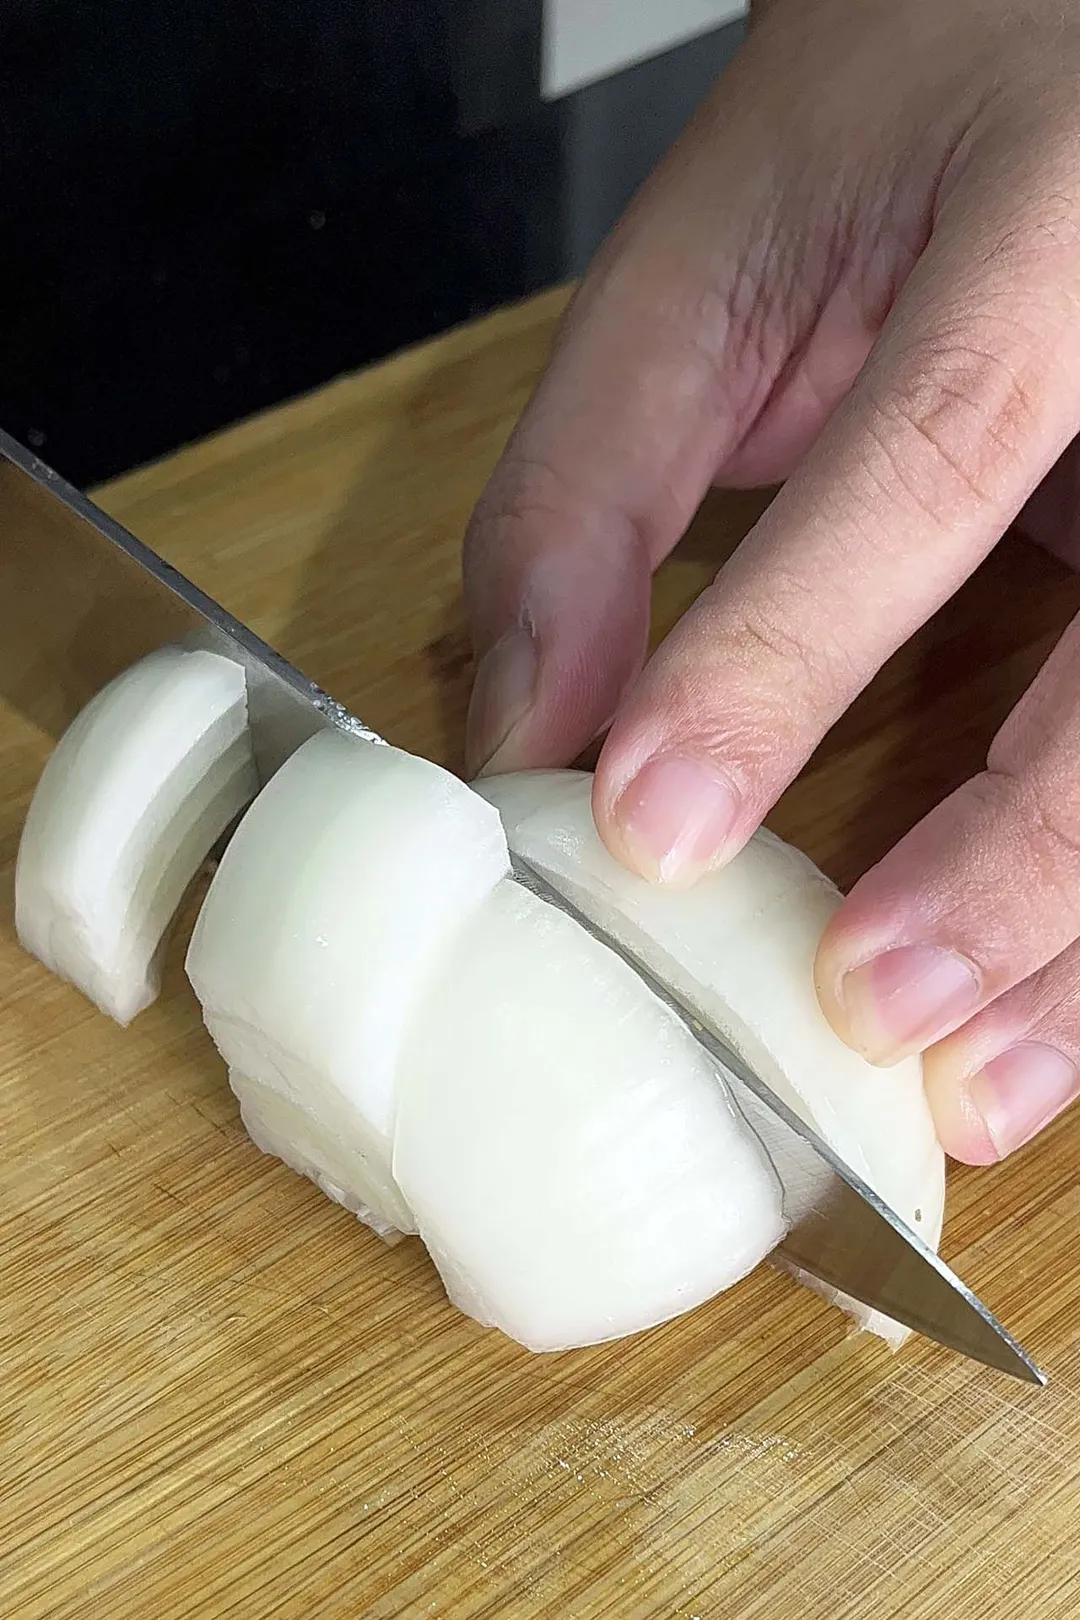 cutting onion on a cutting board